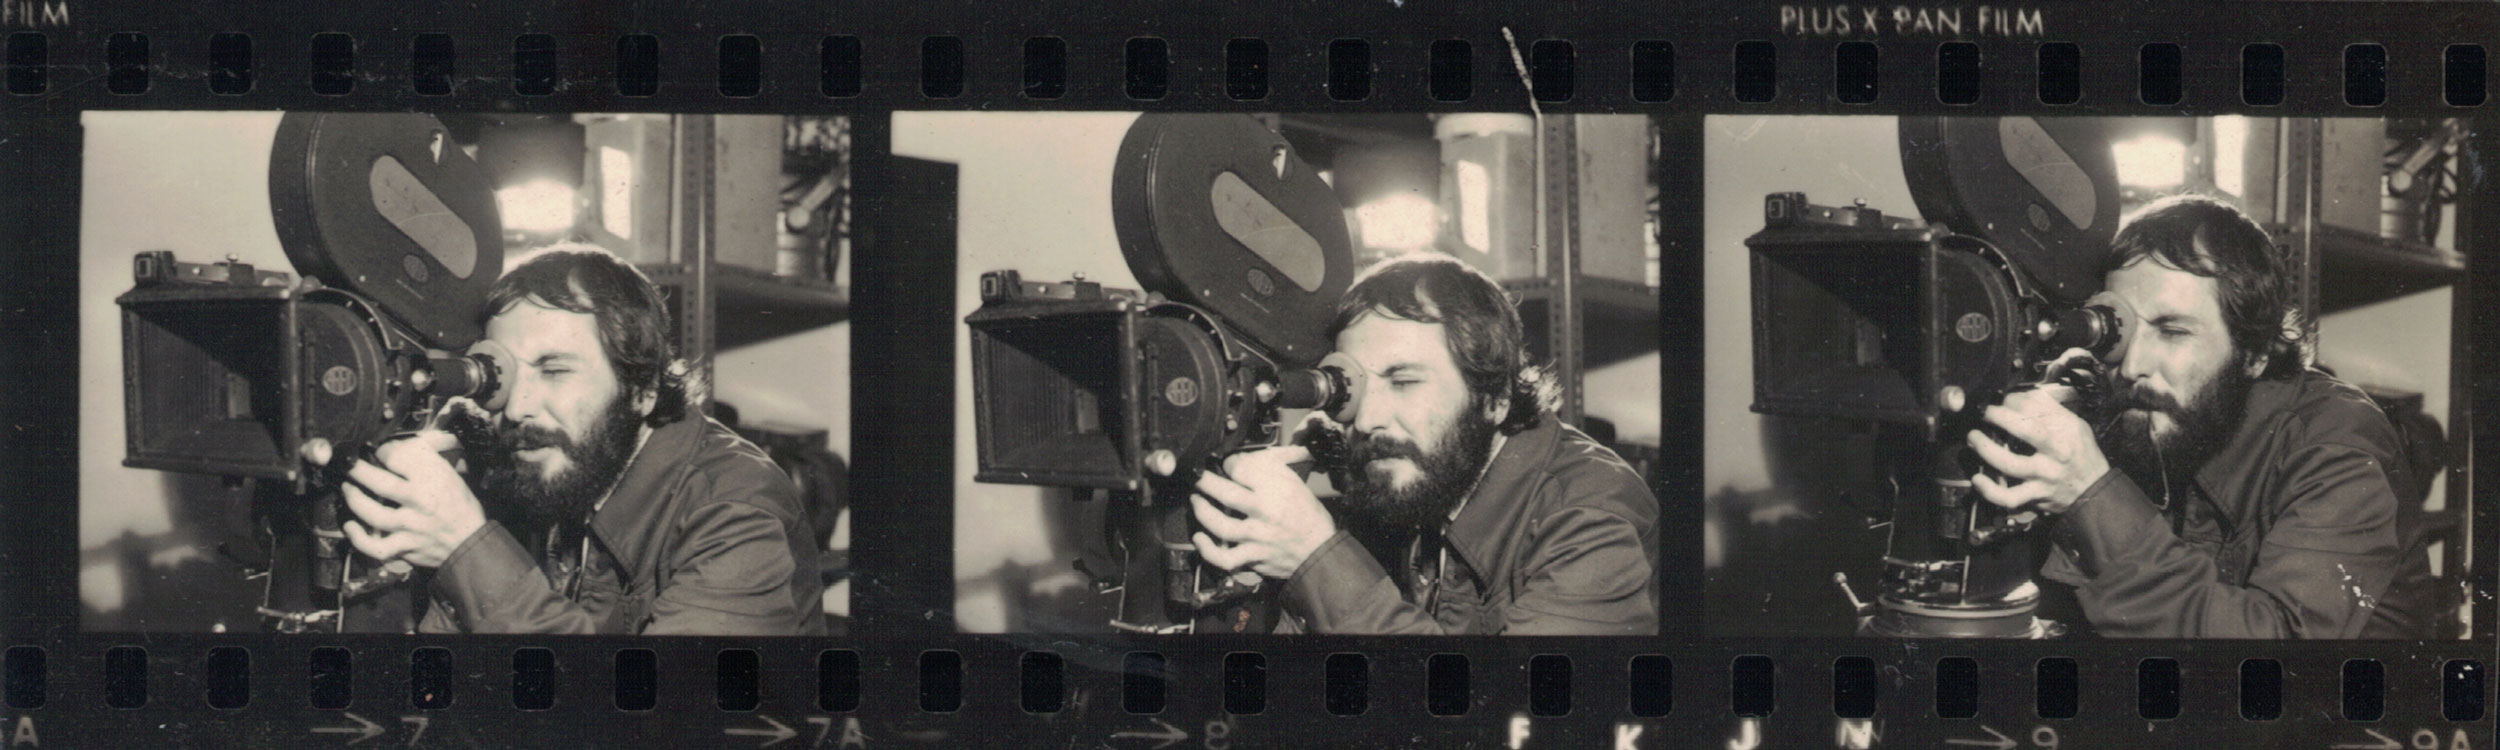 Trecho de negativo de imagem no qual Ramon Alvarado opera câmera cinematográfica e olha através de seu visor. Imagem preto e branco. Fotógrafo(a) não identificado(a).